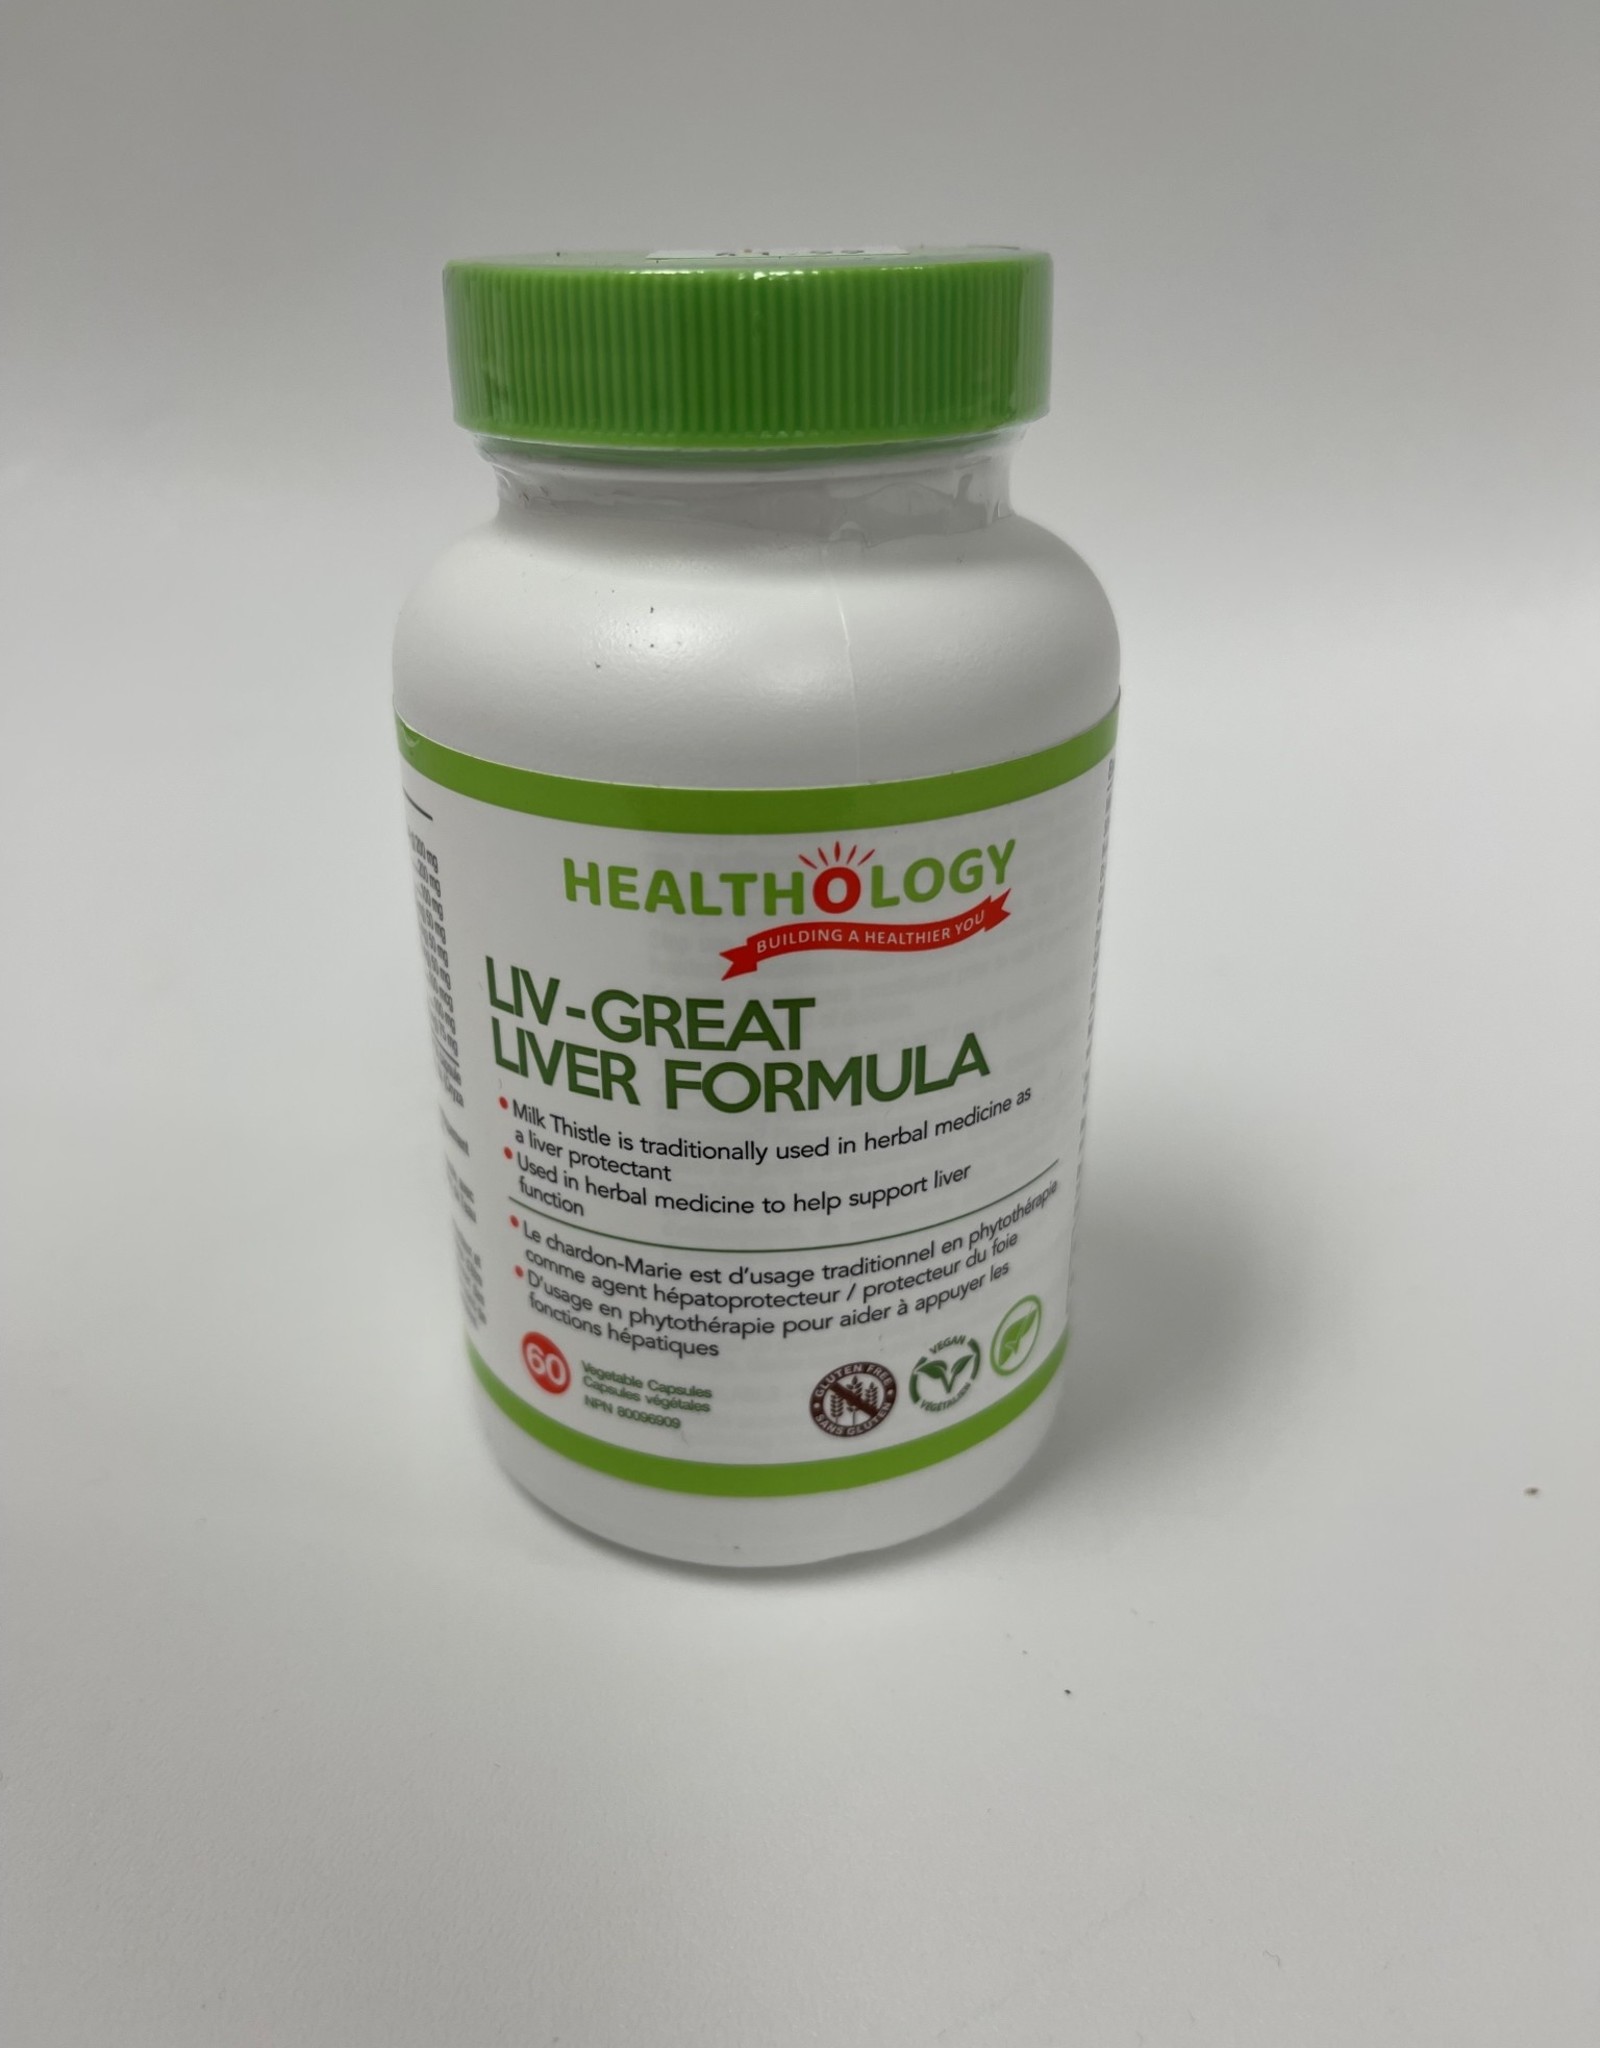 Healthology Healthology - Liv-Great Liver Formula (60cap)